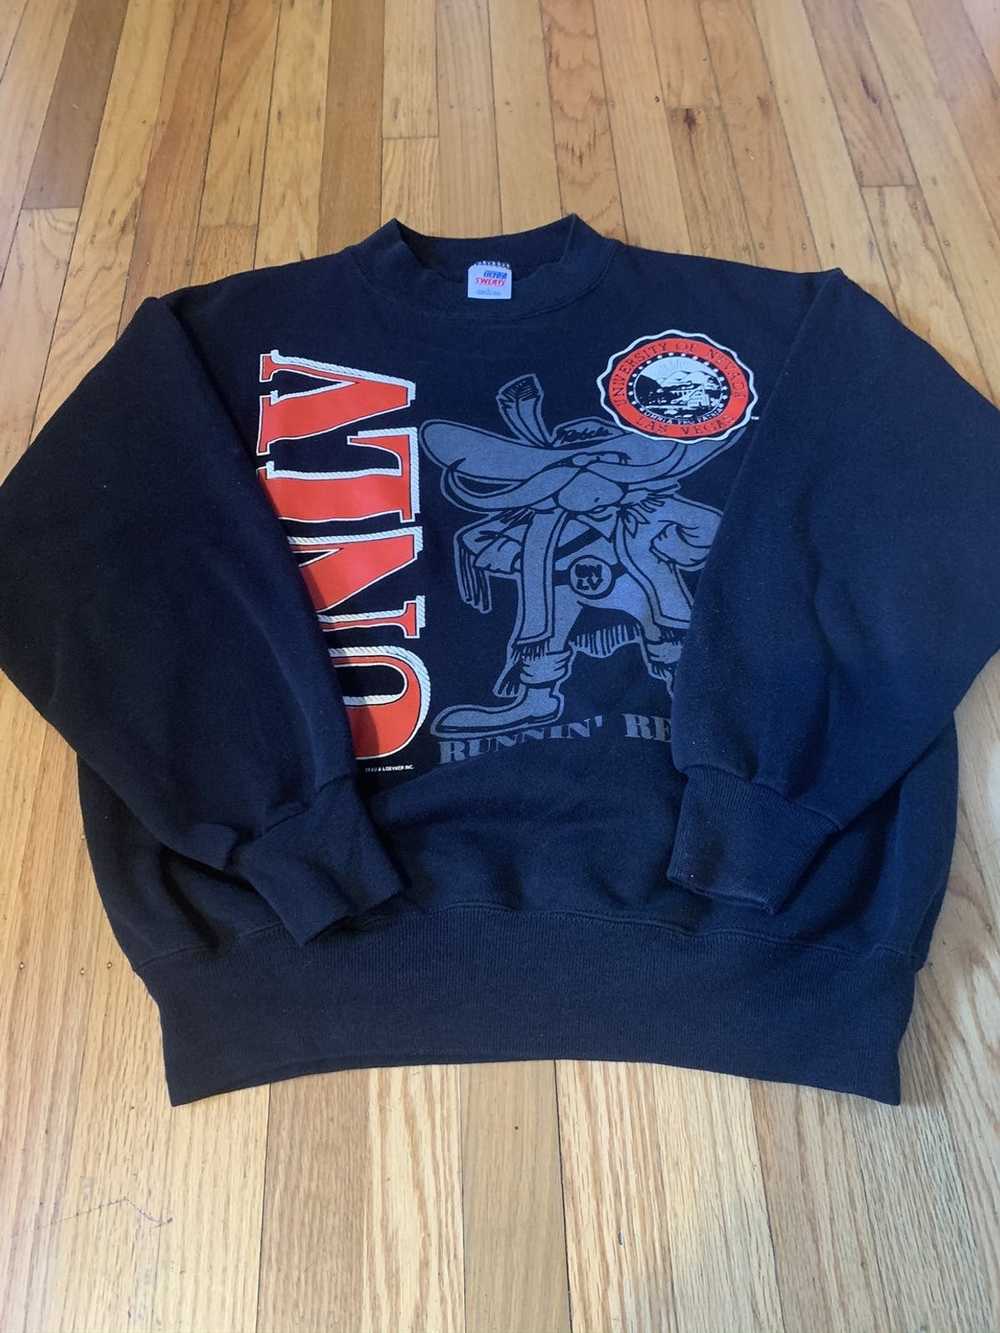 Ncaa × Vintage Vintage NCAA sweatshirt - image 1